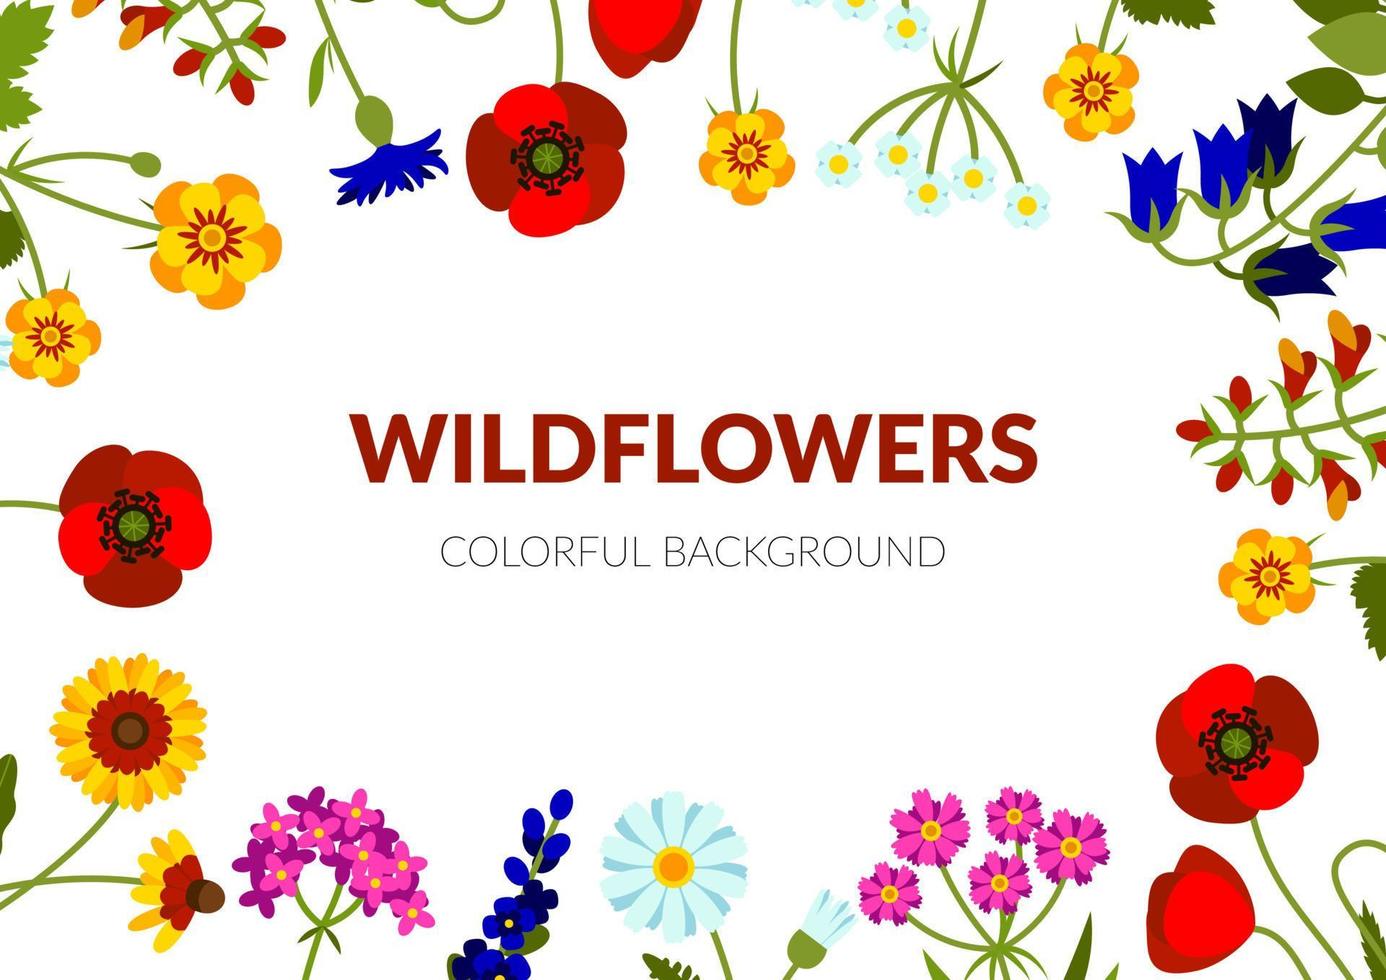 horizontale zomerbanner met wilde bloemen, waaronder duizendblad, echinacea, korenbloem, klaproos, leeuwebek, klokje, lavendel, kamille, boterbloem. vector illustratie